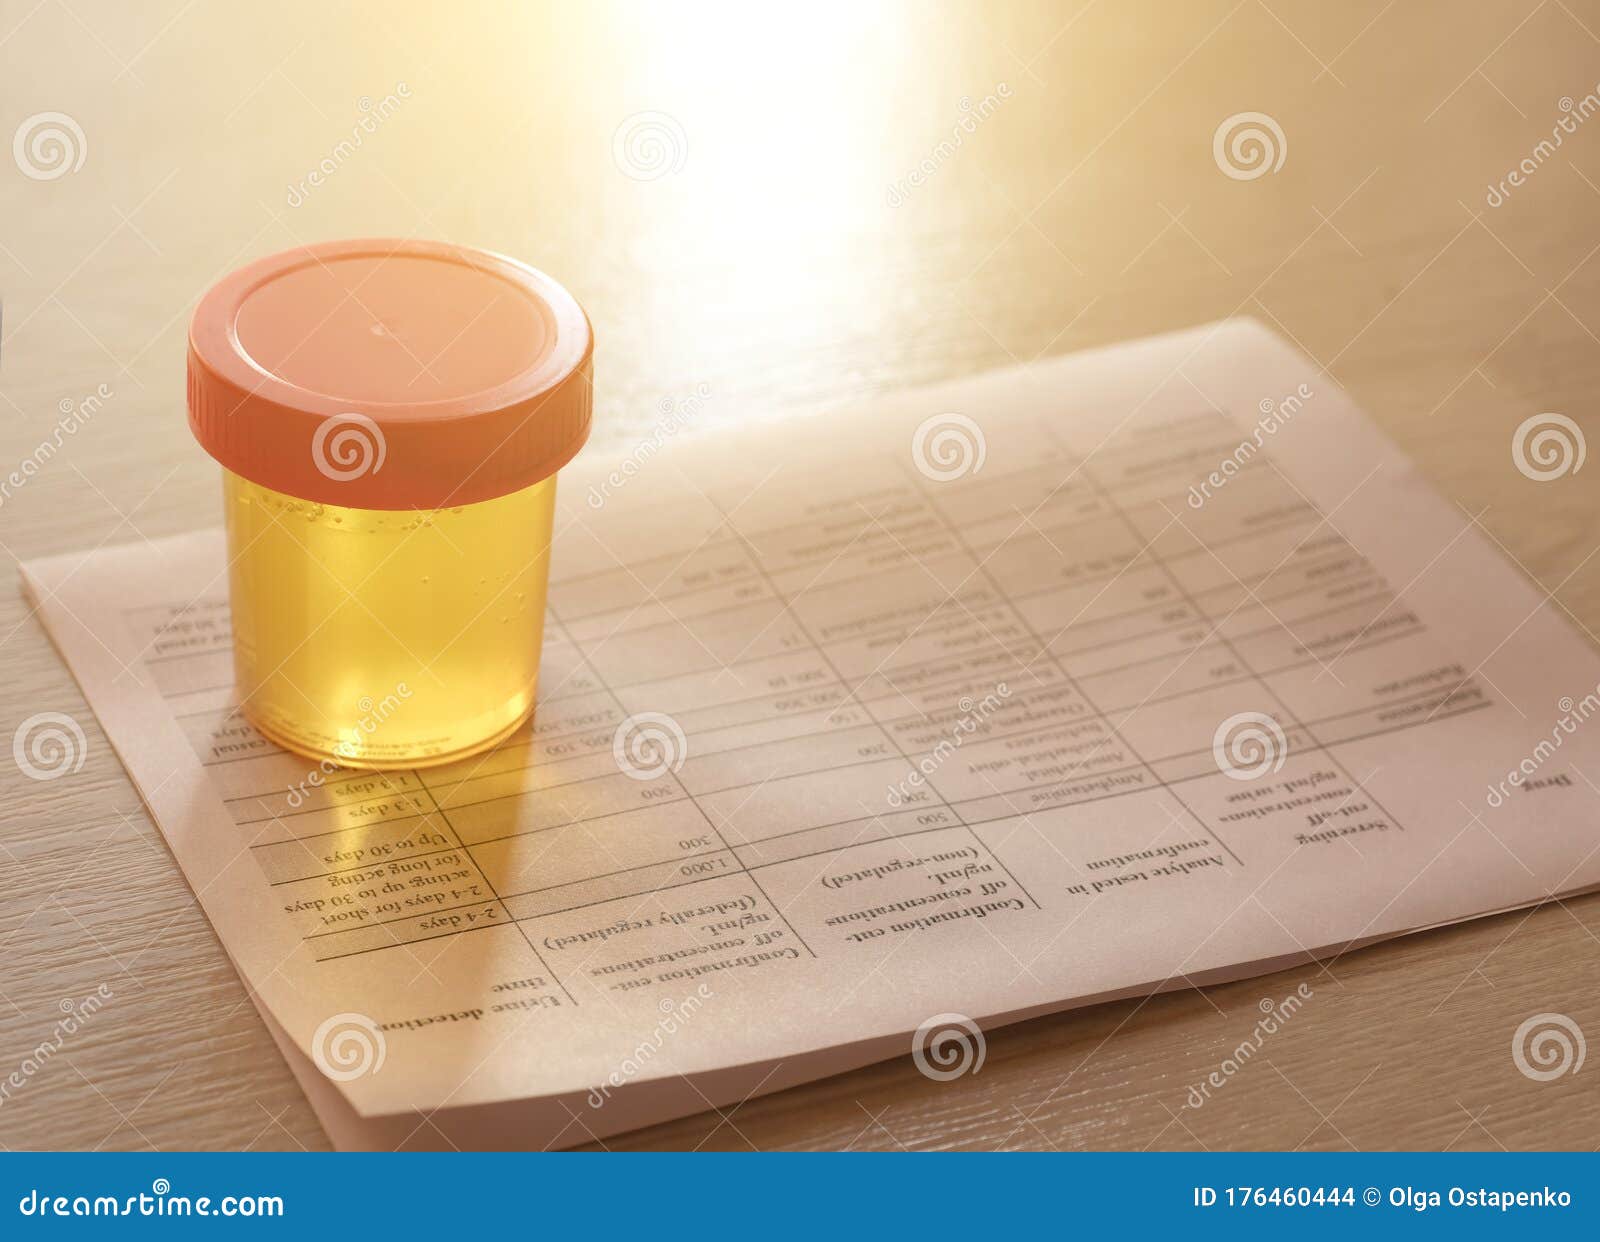 urinalysis, drug testing, drug. plastic jars for medical tests.. urine test